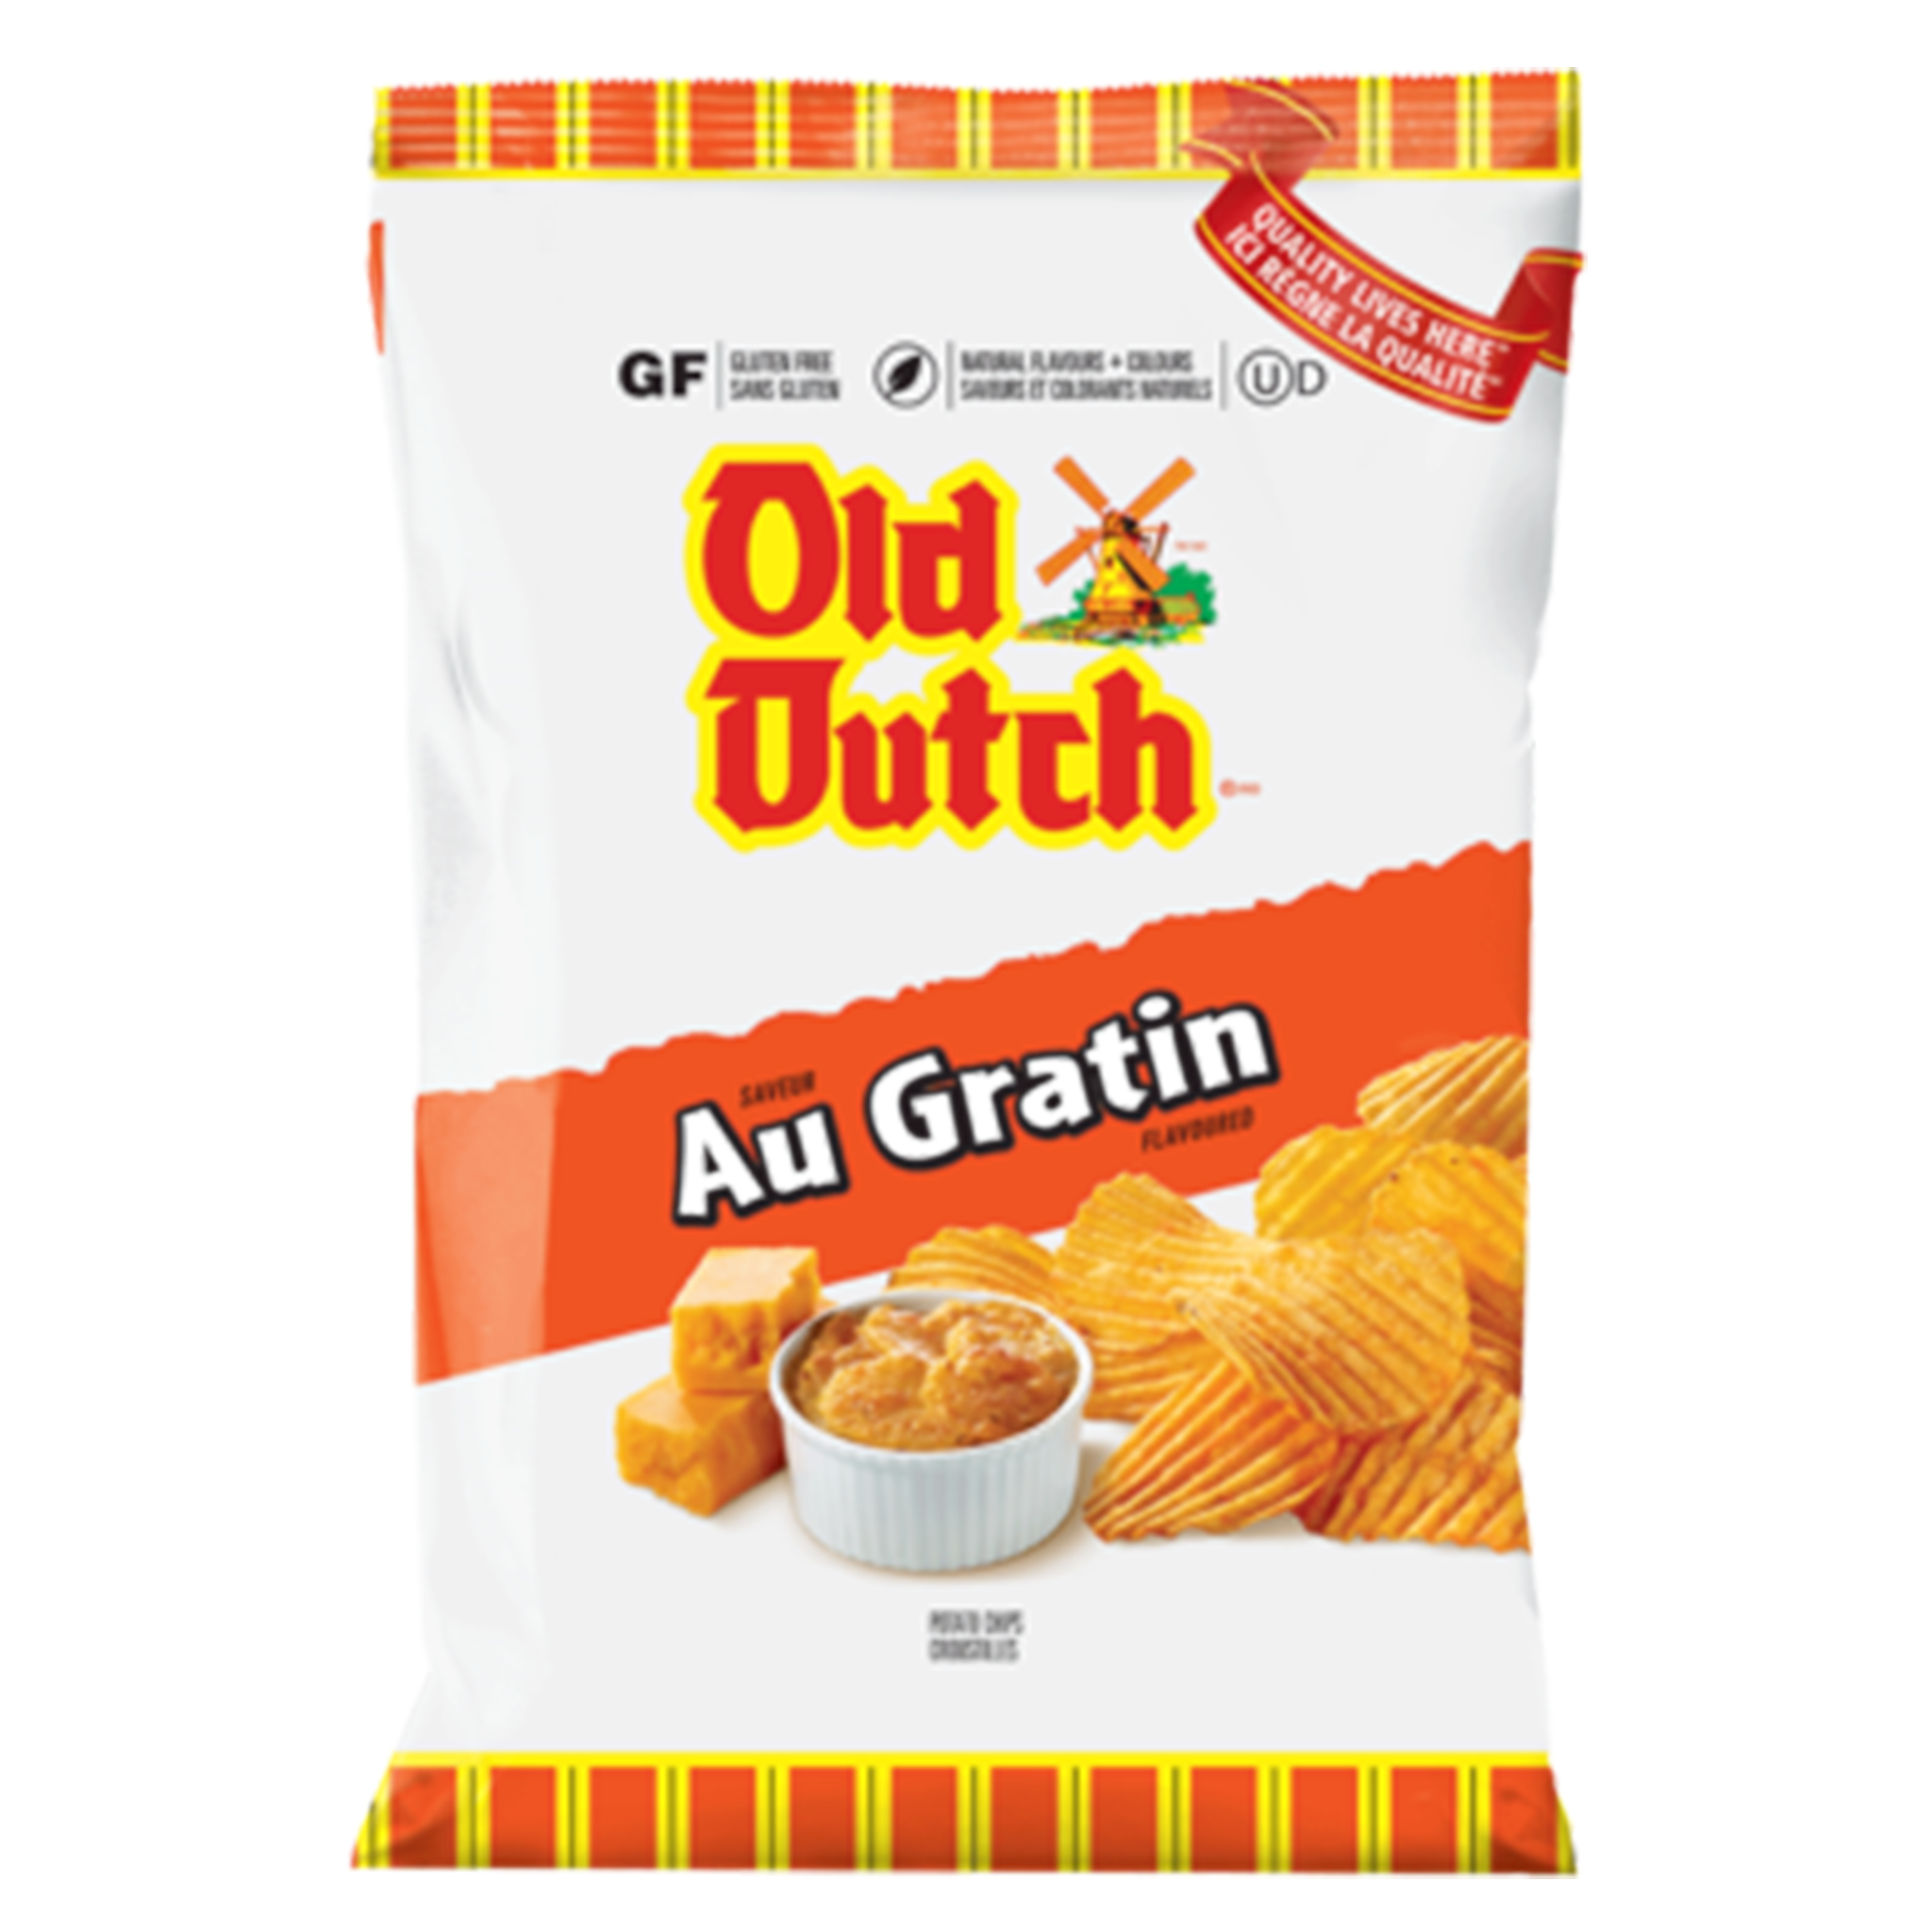 Old Dutch - Au Gratin